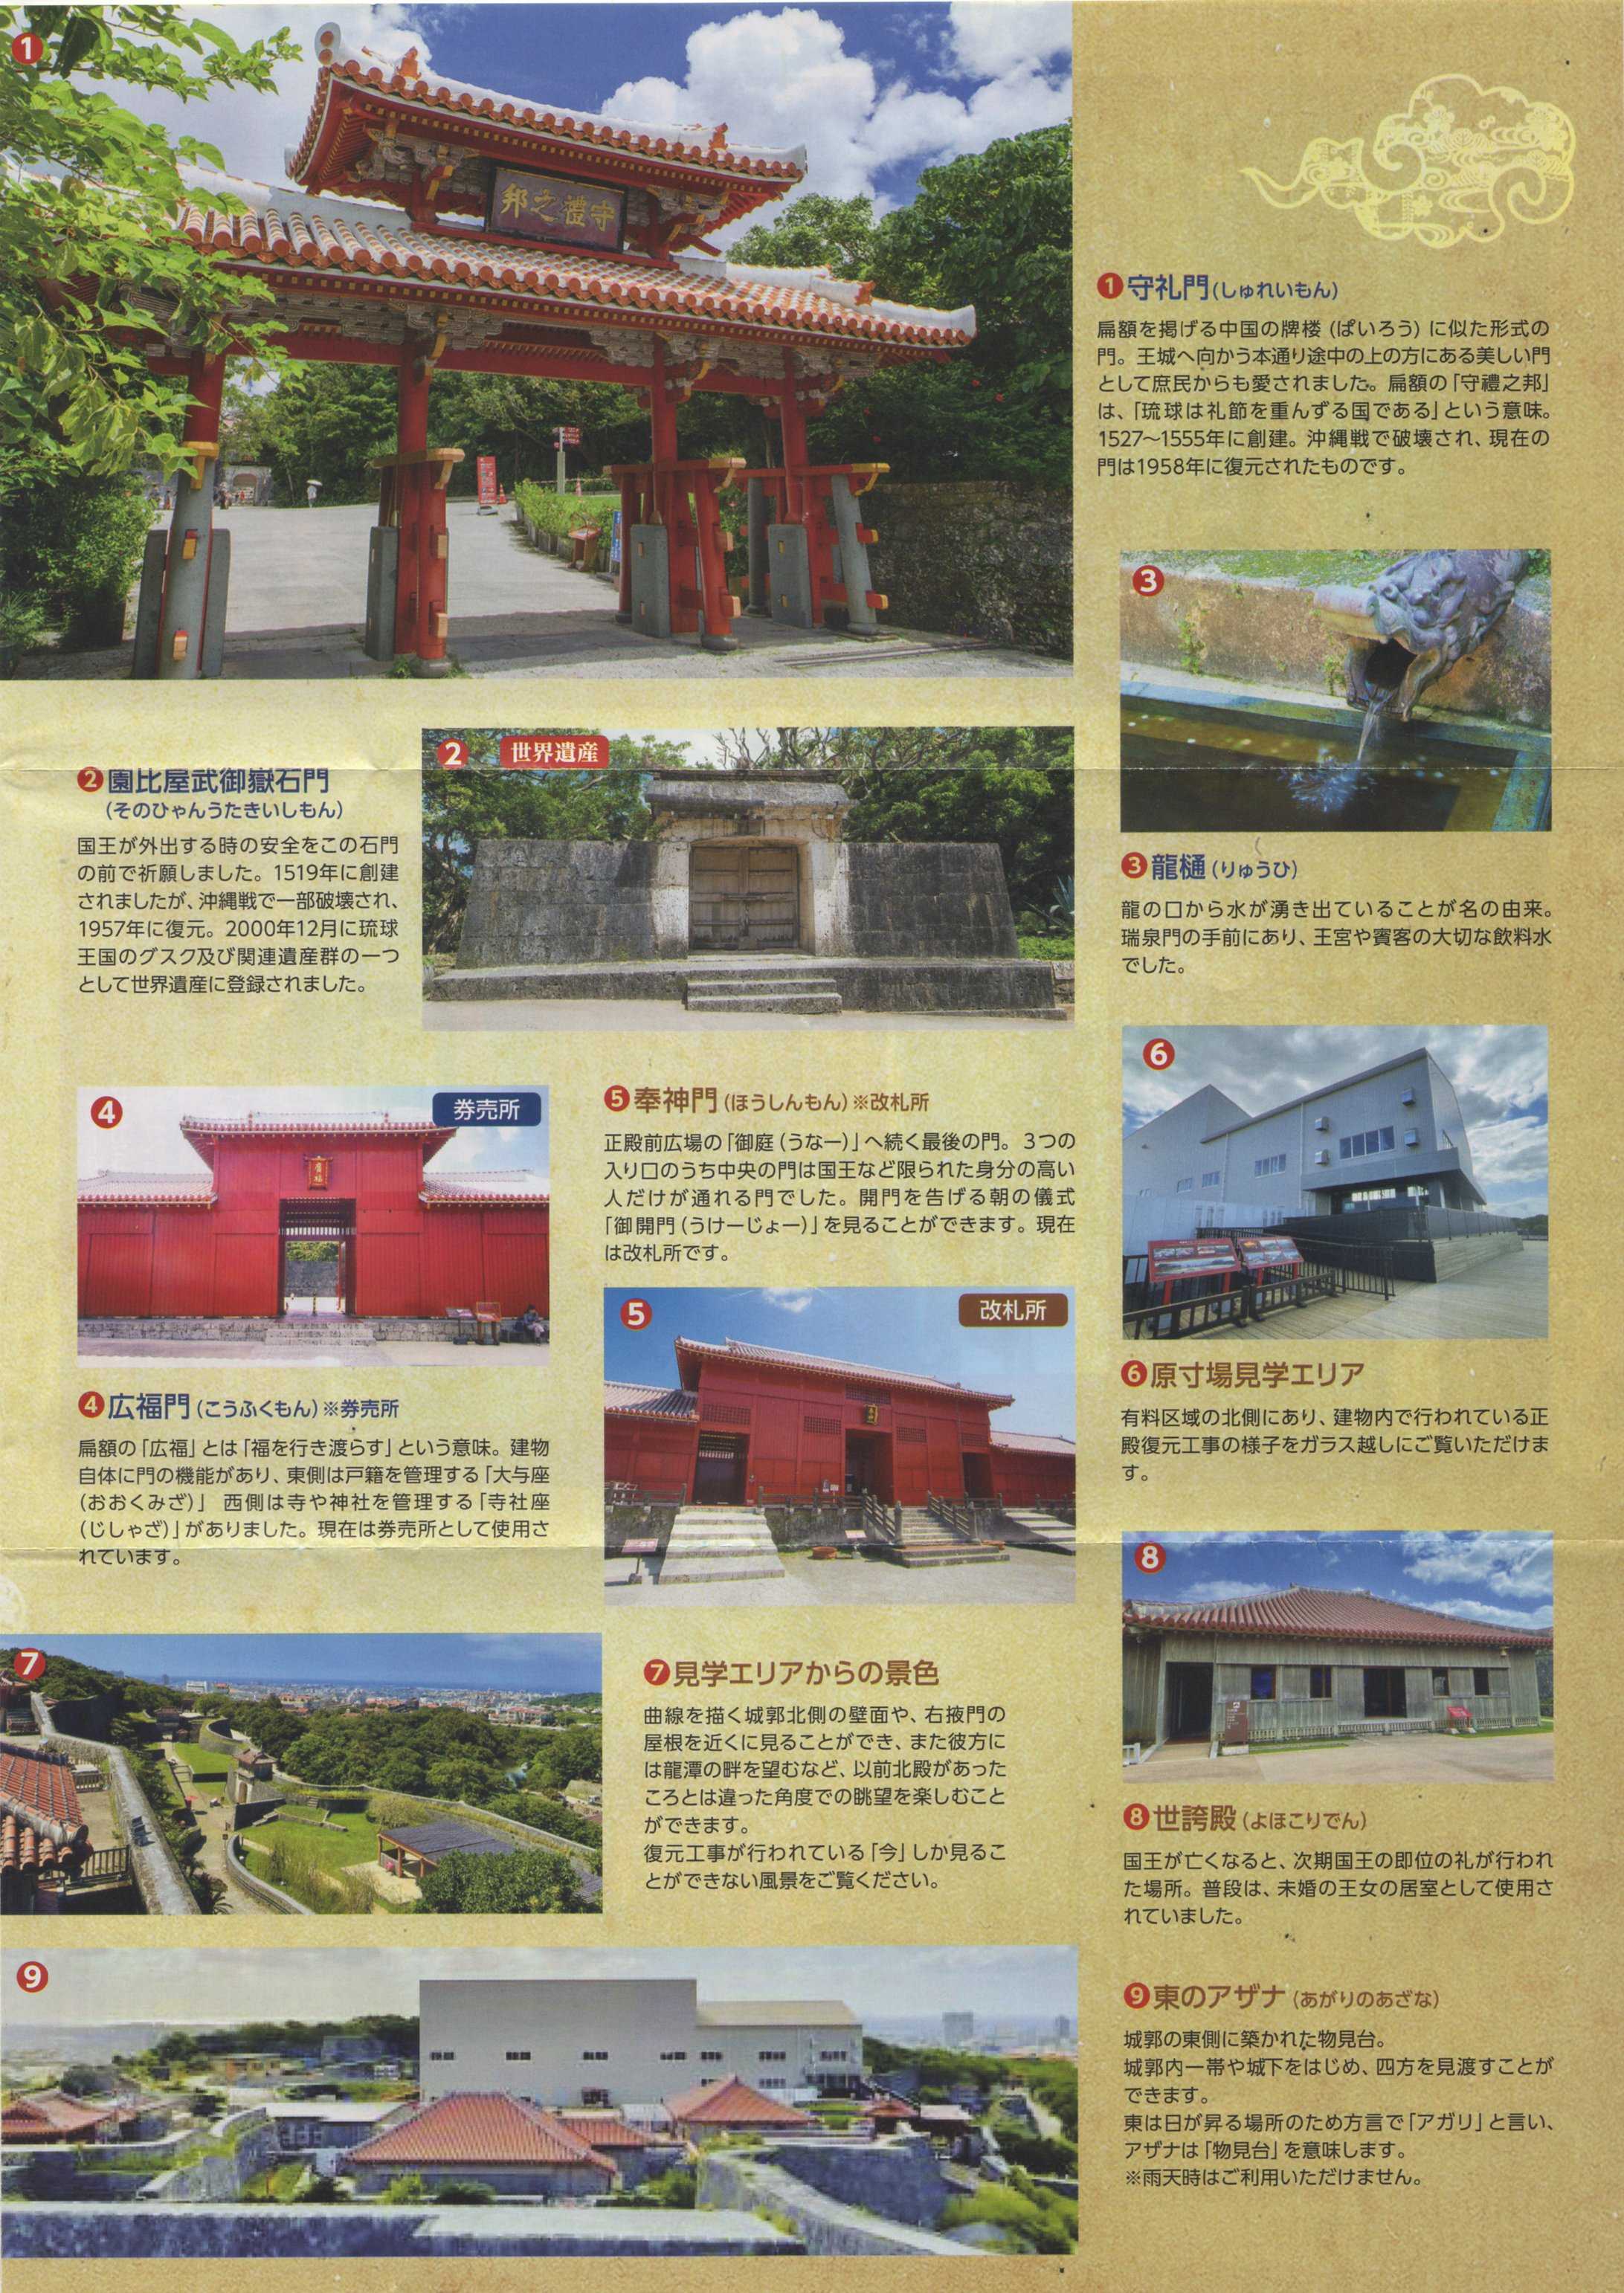 御城印集めの旅 187 首里城（沖縄県） | Canon Boy のブログ - 楽天ブログ